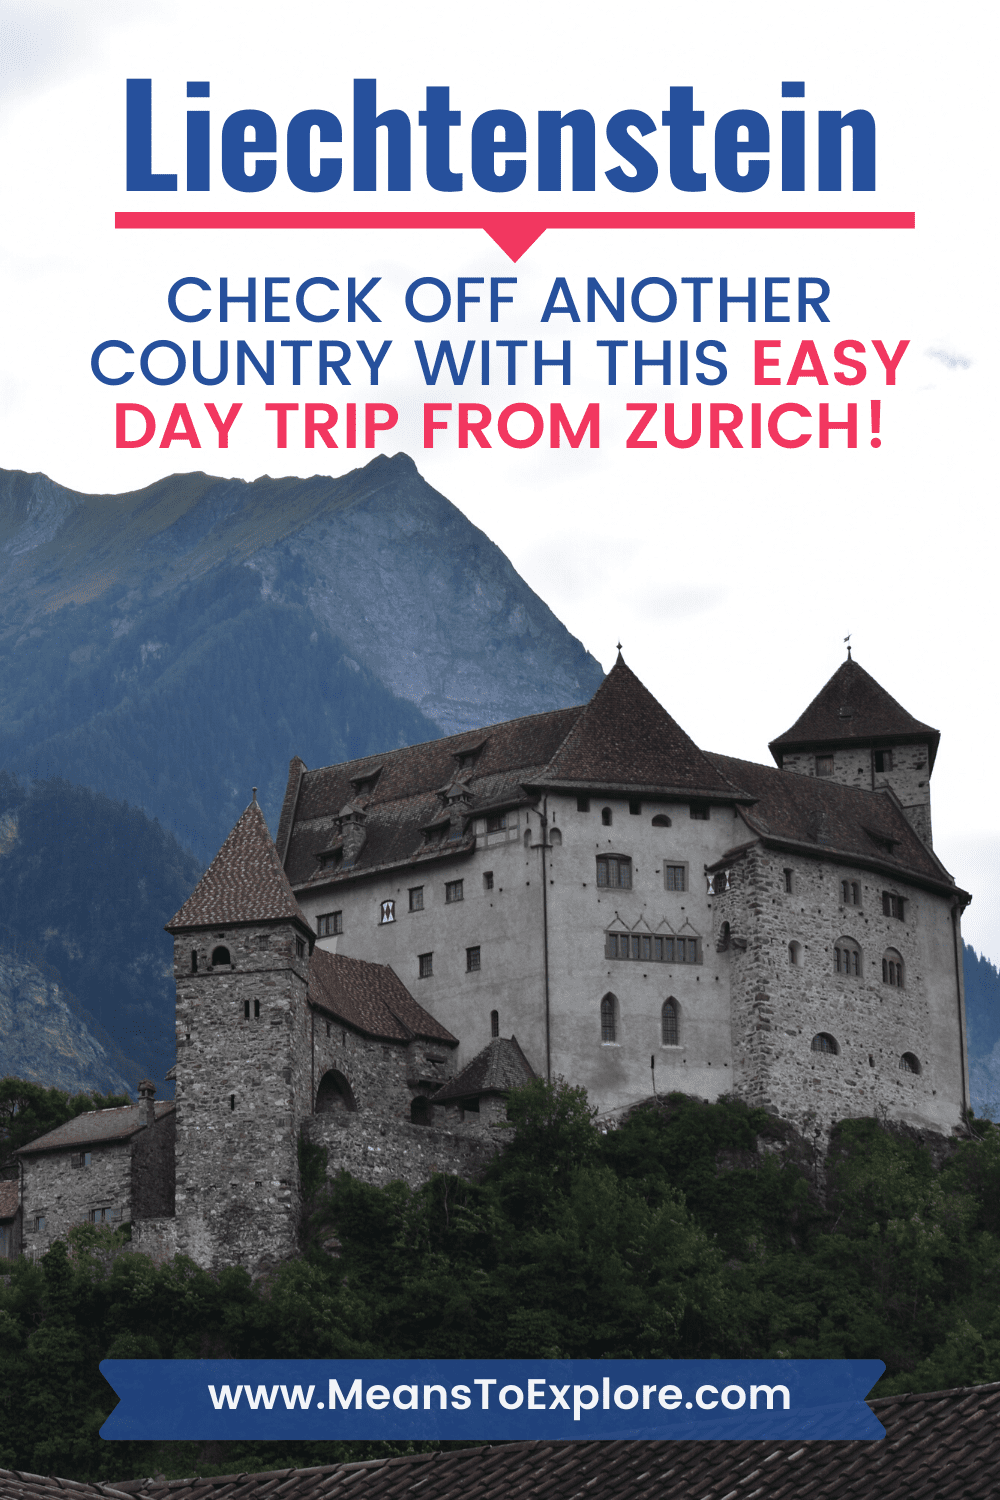 How to Enjoy an Unforgettable Day Trip to Liechtenstein